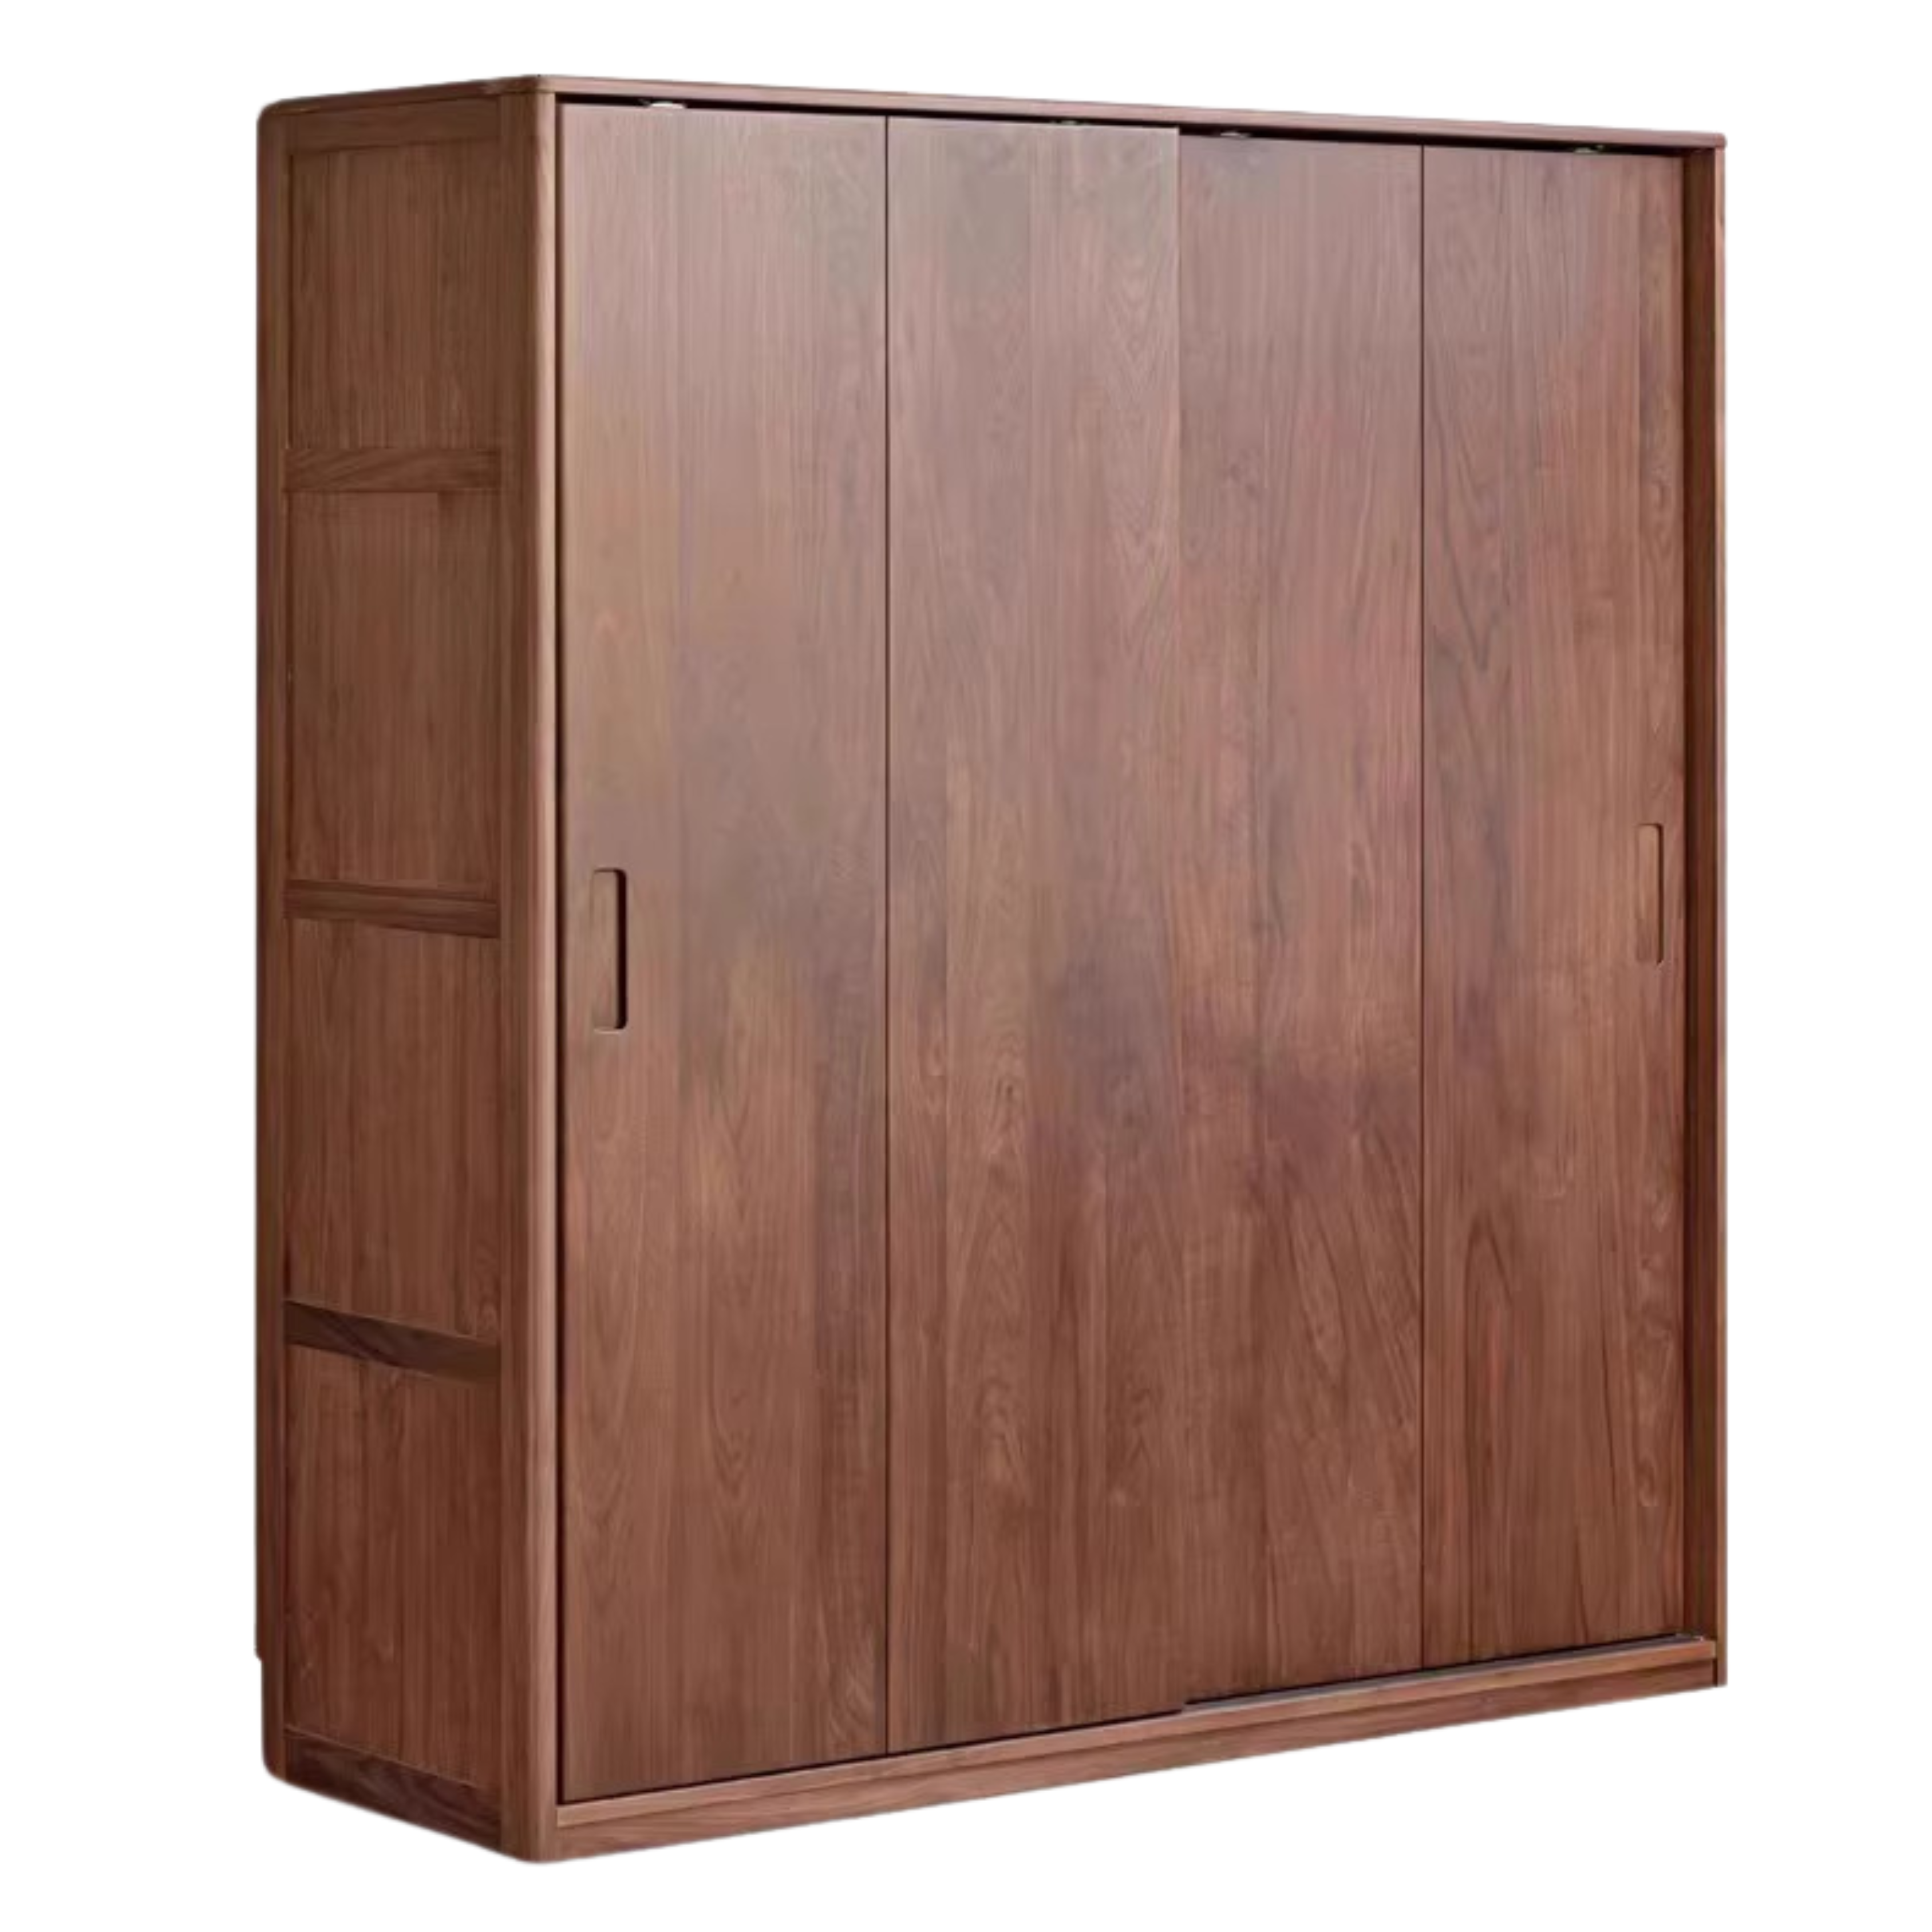 Black walnut solid wood sliding door wardrobe)